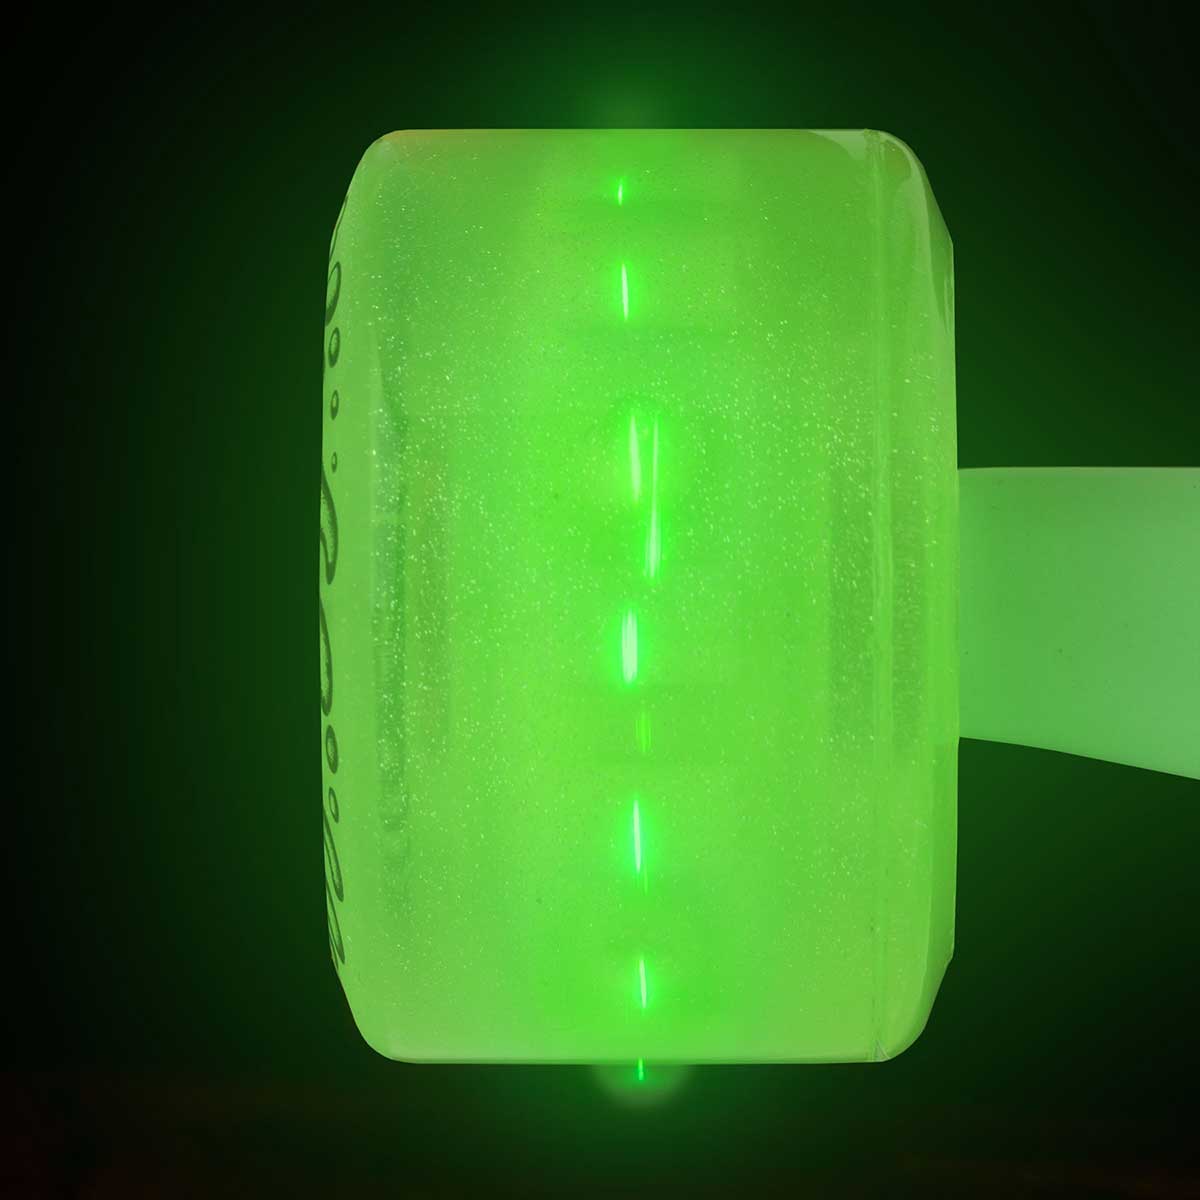 Slime Balls Wheels OG Slime 60mm 78A Green LED Light Ups